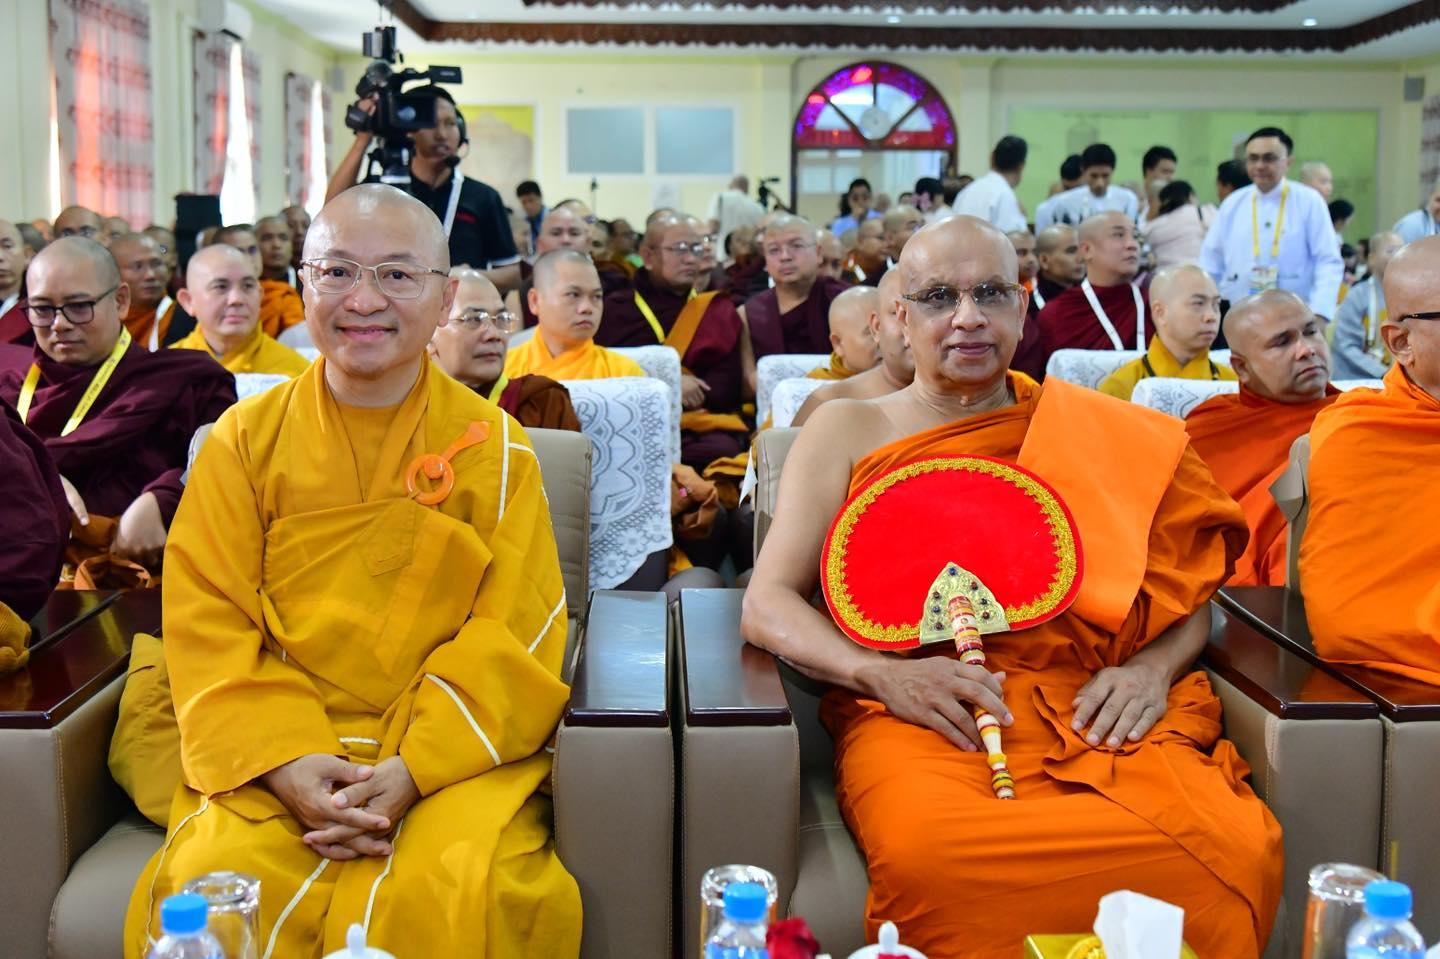 Kỷ niệm 25 năm thành lập Đại học Quốc tế Truyền bá Phật giáo Nguyên thủy Yangon